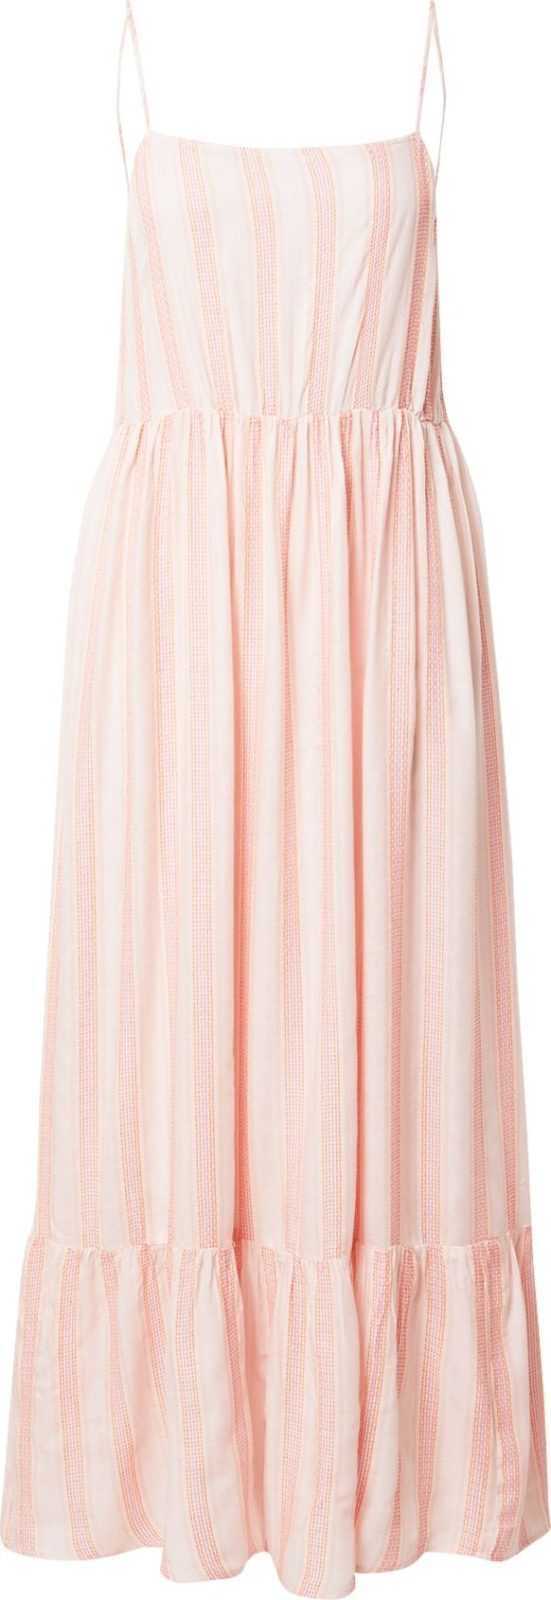 FRNCH PARIS Letní šaty 'Maissane' béžová / fialová / pastelově růžová / offwhite